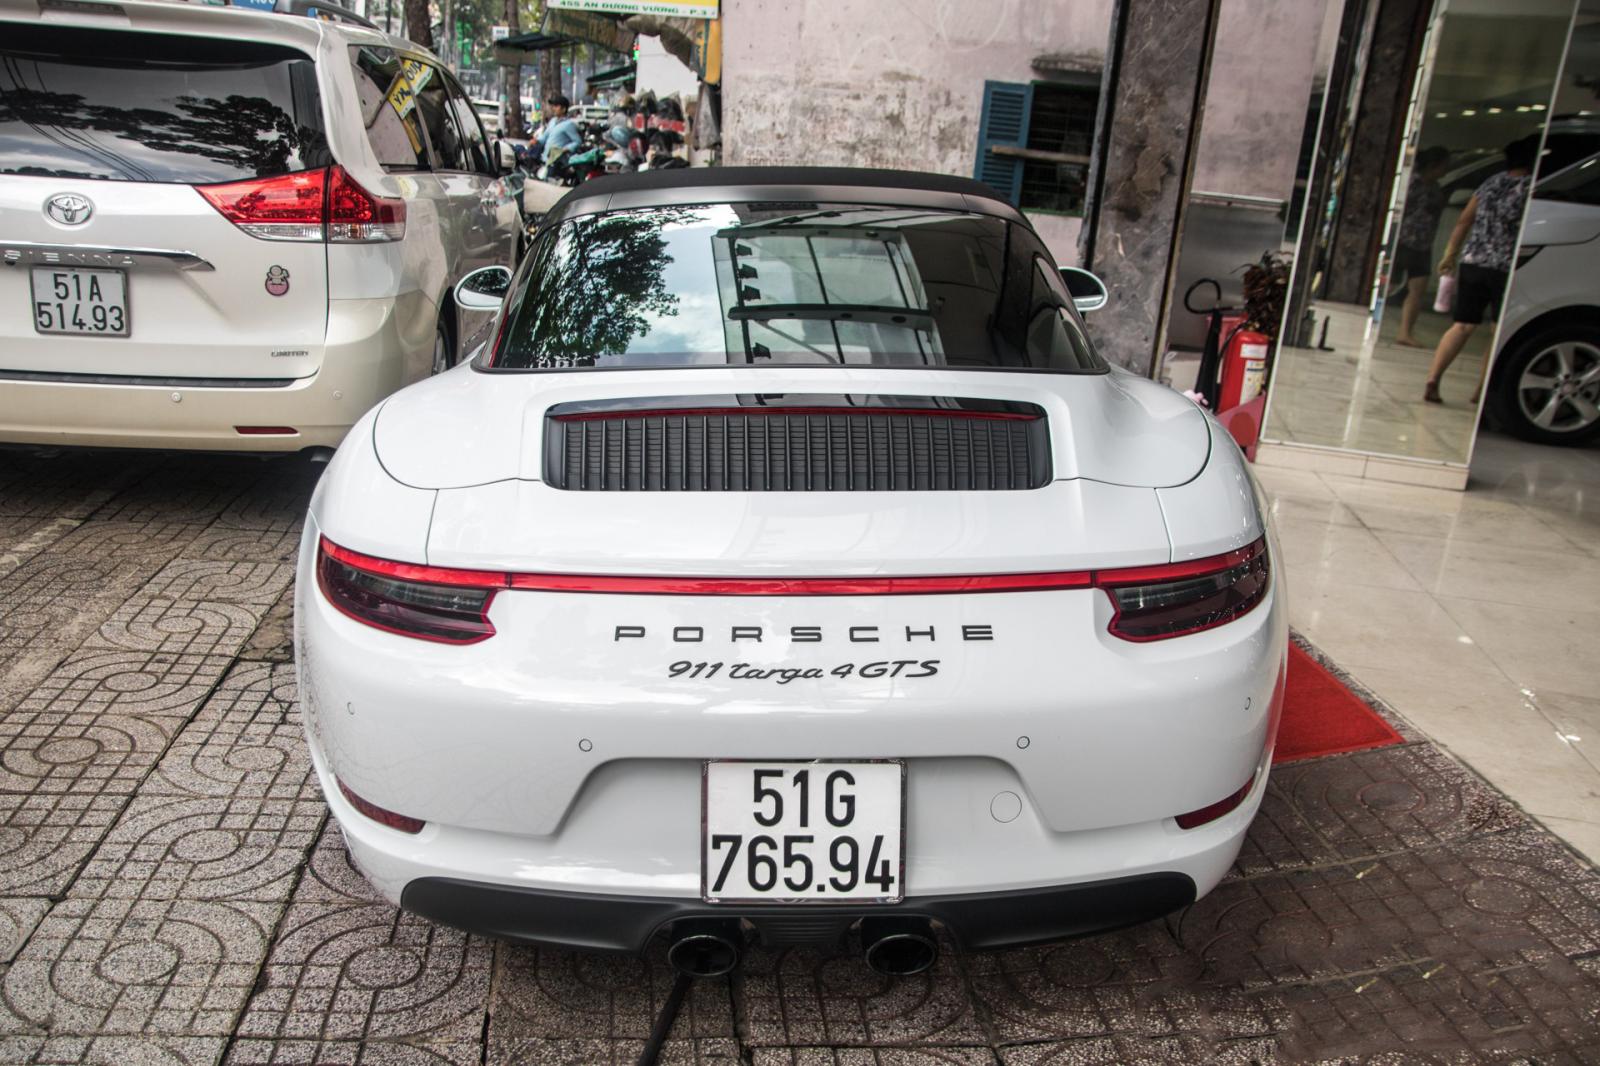 Siêu xe Porsche 911 Targa 4 GTS độc nhất Việt Nam được đăng ký biển số 7a